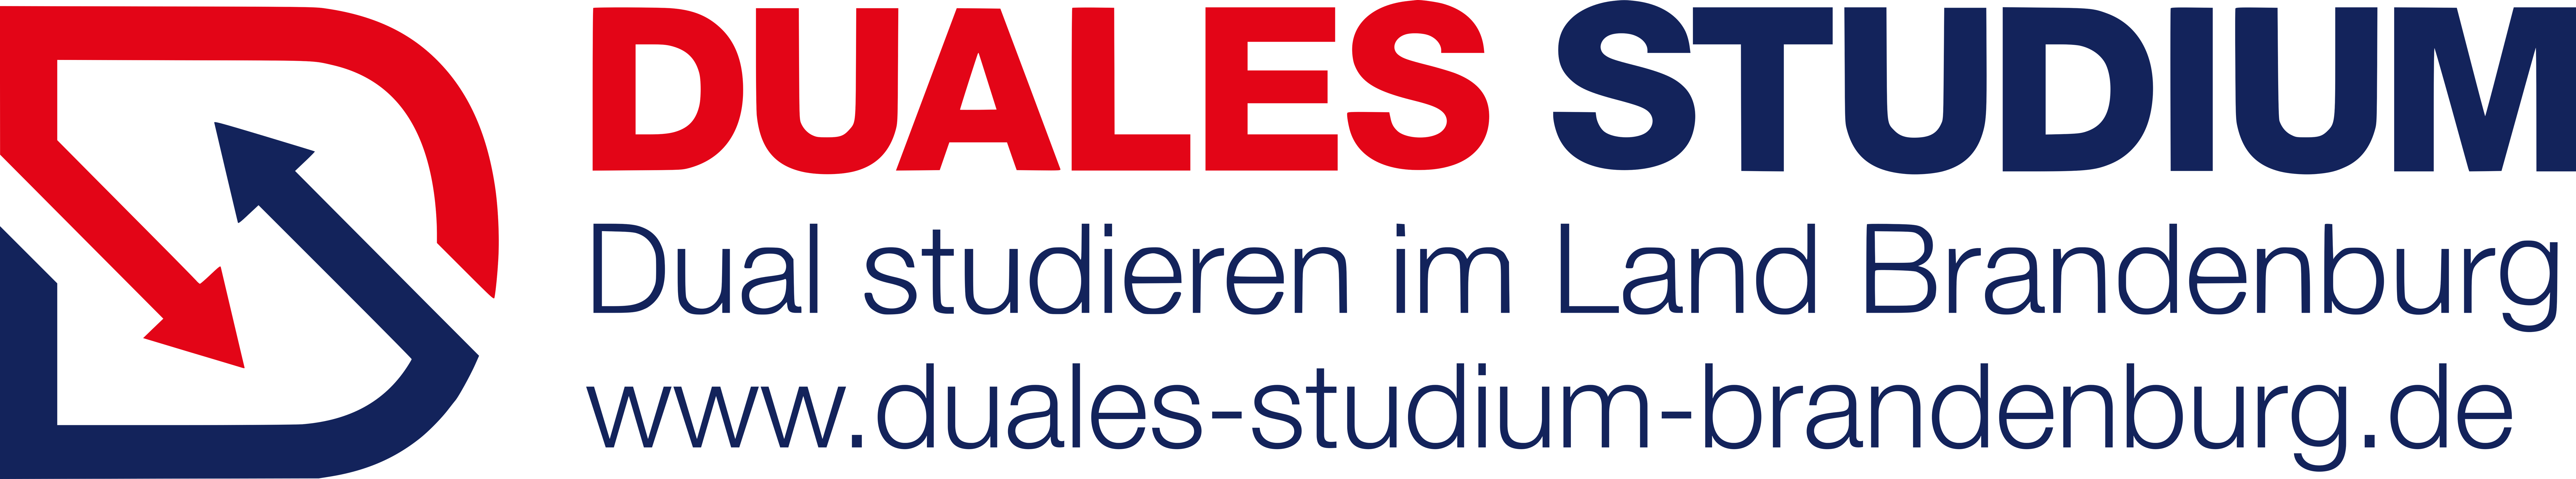 Agentur Duales Studium Land Brandenburg  Logo